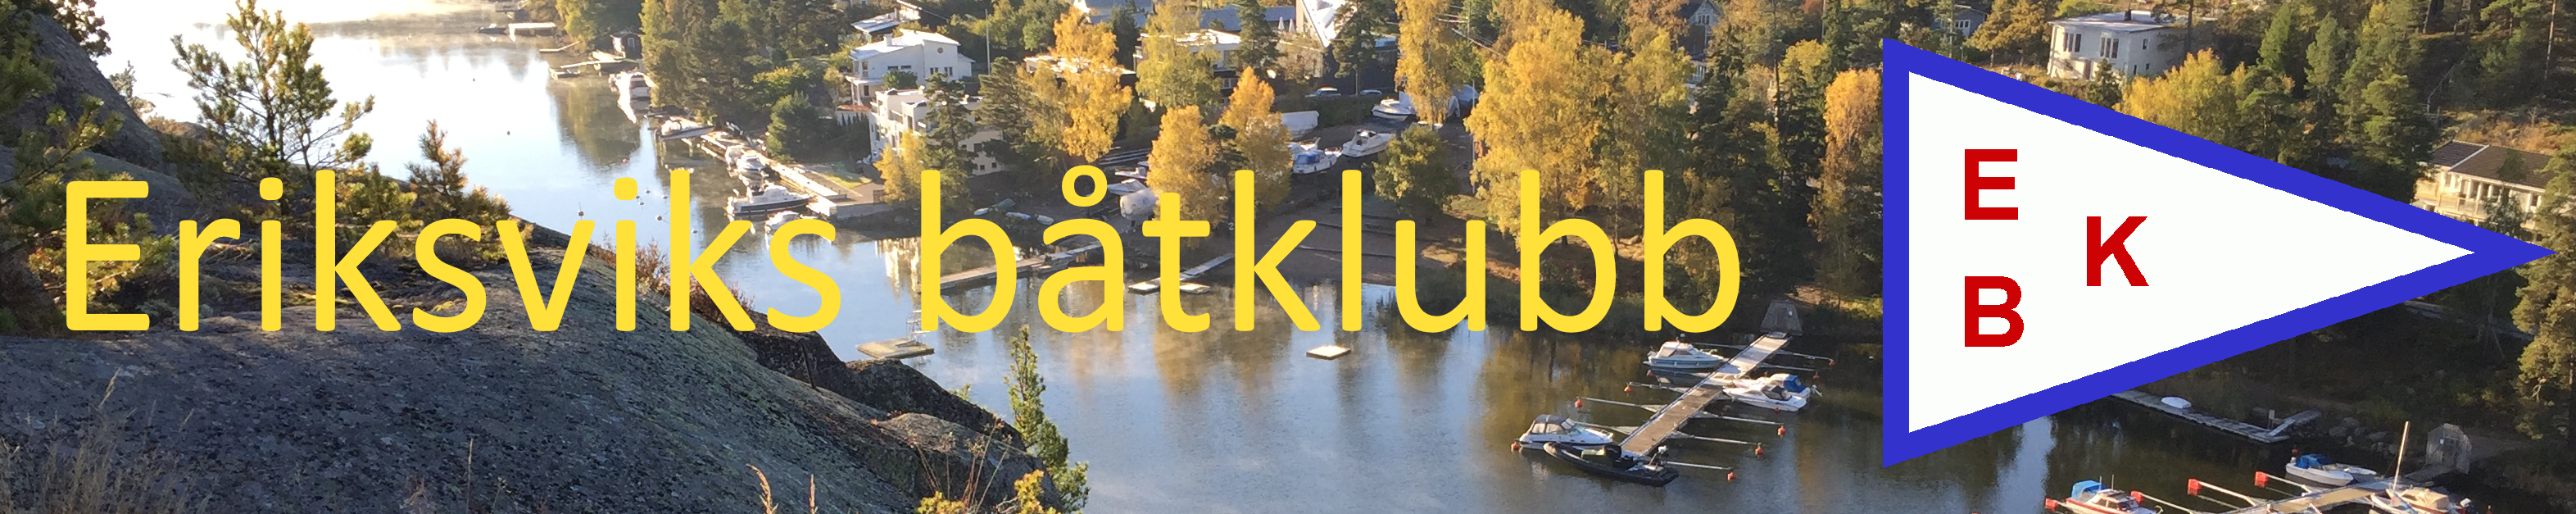 EBK – Eriksviks båtklubb